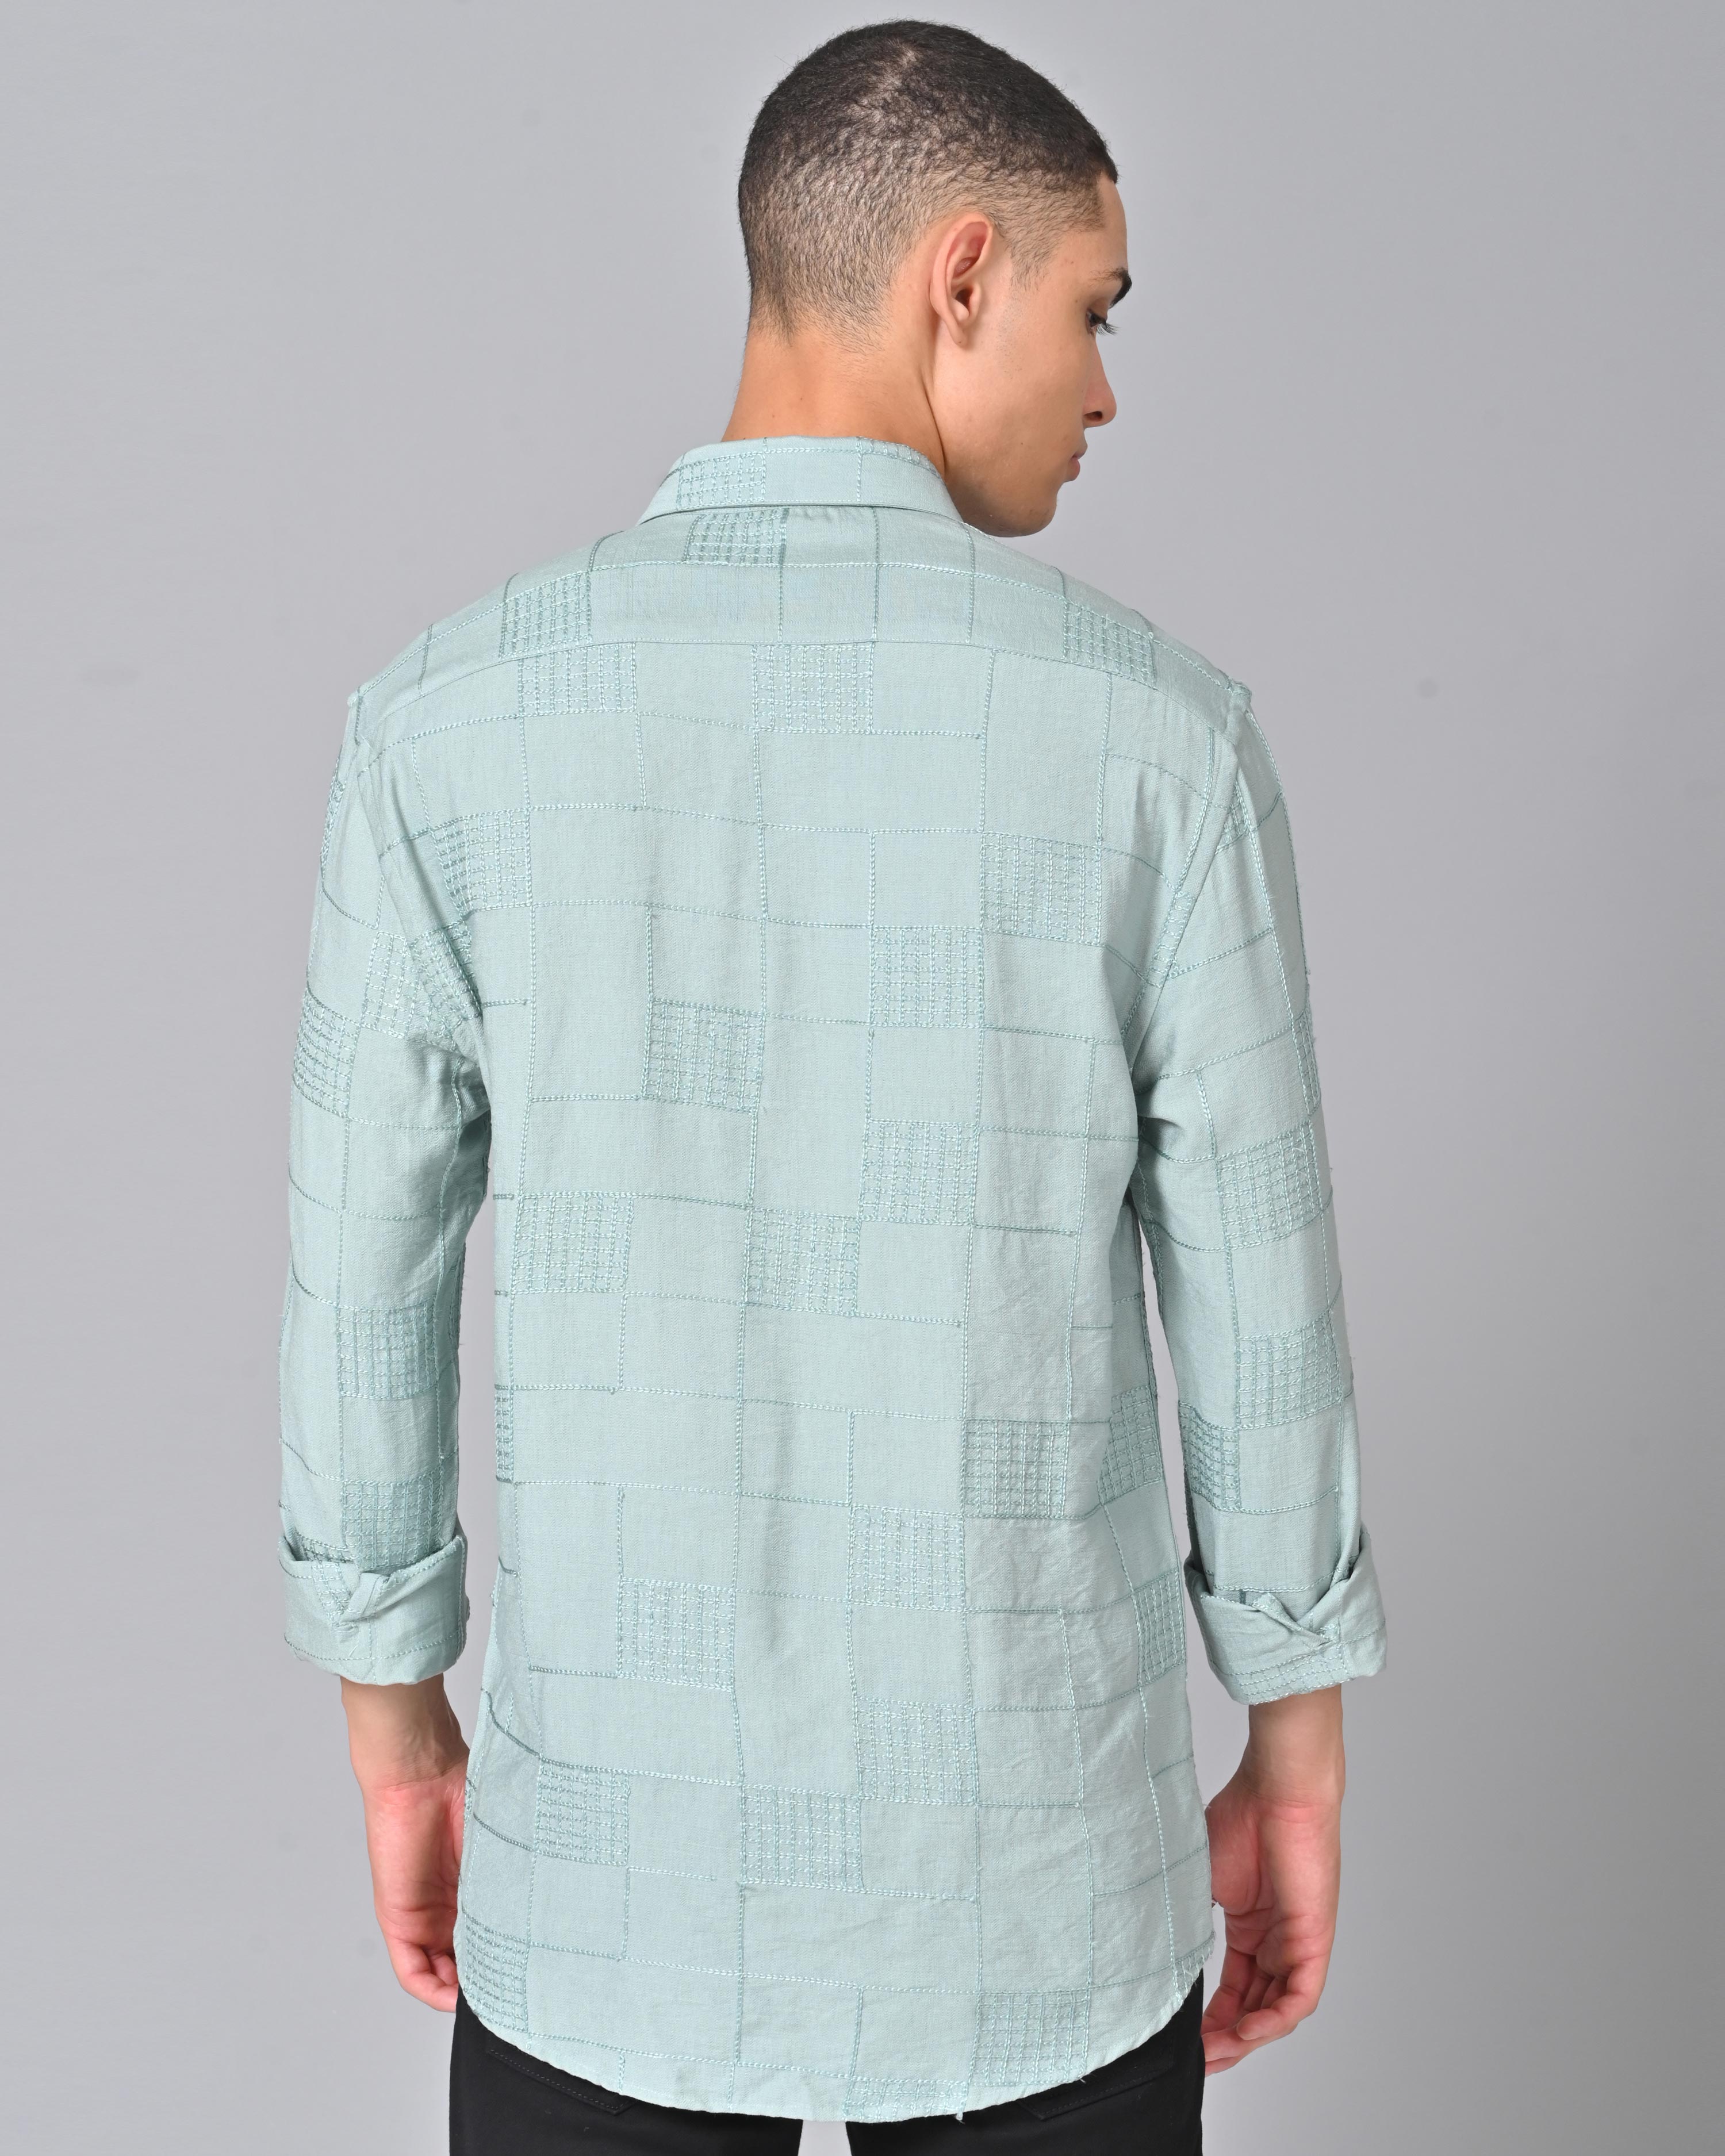 Men's Embroidered Full Sleeve Misty Blue Shirt Online